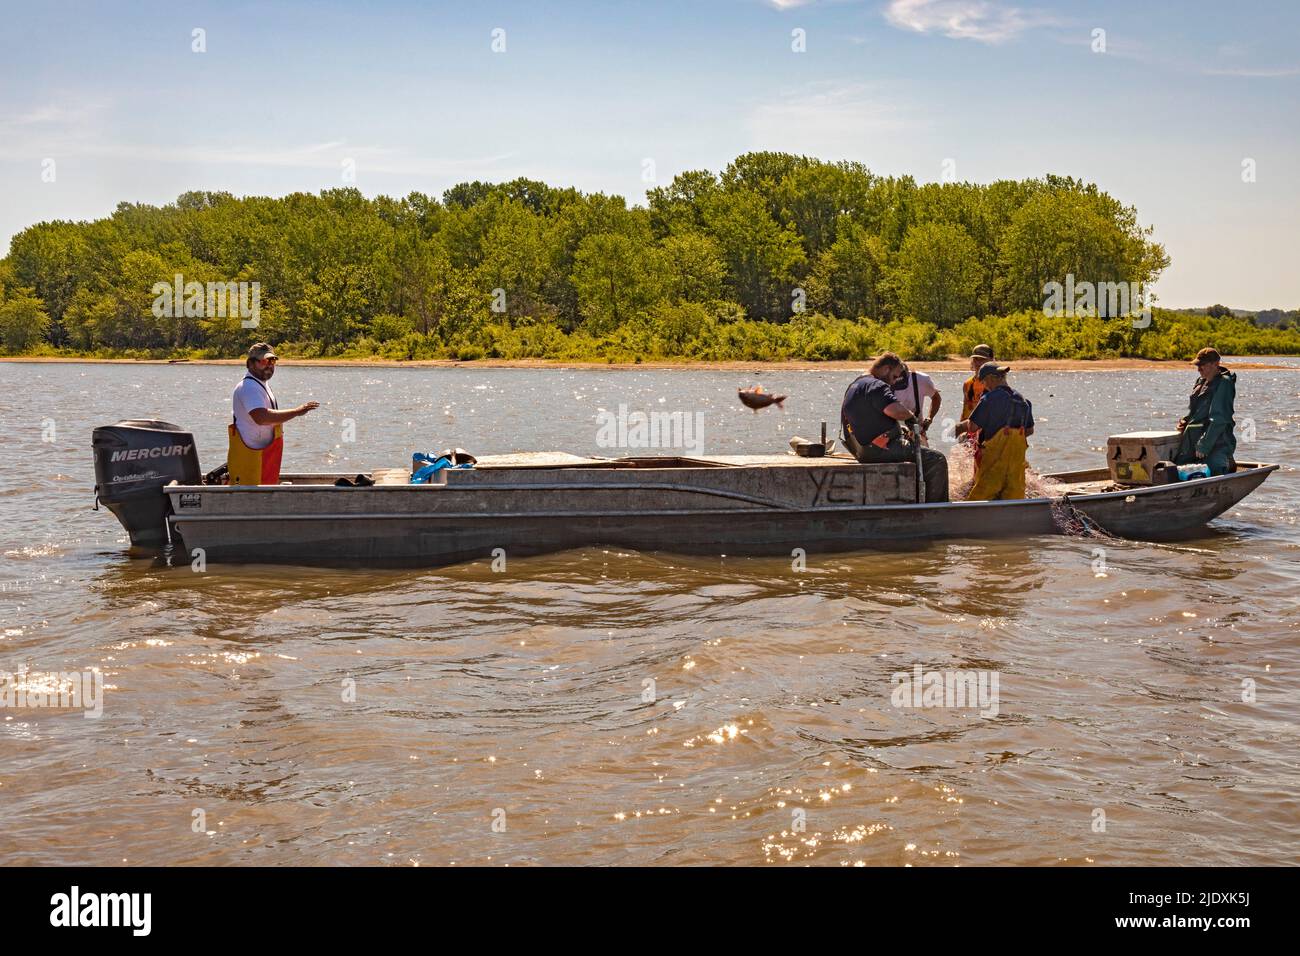 Peoria, Illinois - Fischer am Illinois River nutzen Kiefernzapfen, um invasive asiatische Karpfen zu ernten, vor allem den Silberkarpfen (Hypophthalmichthys molitrix). Stockfoto